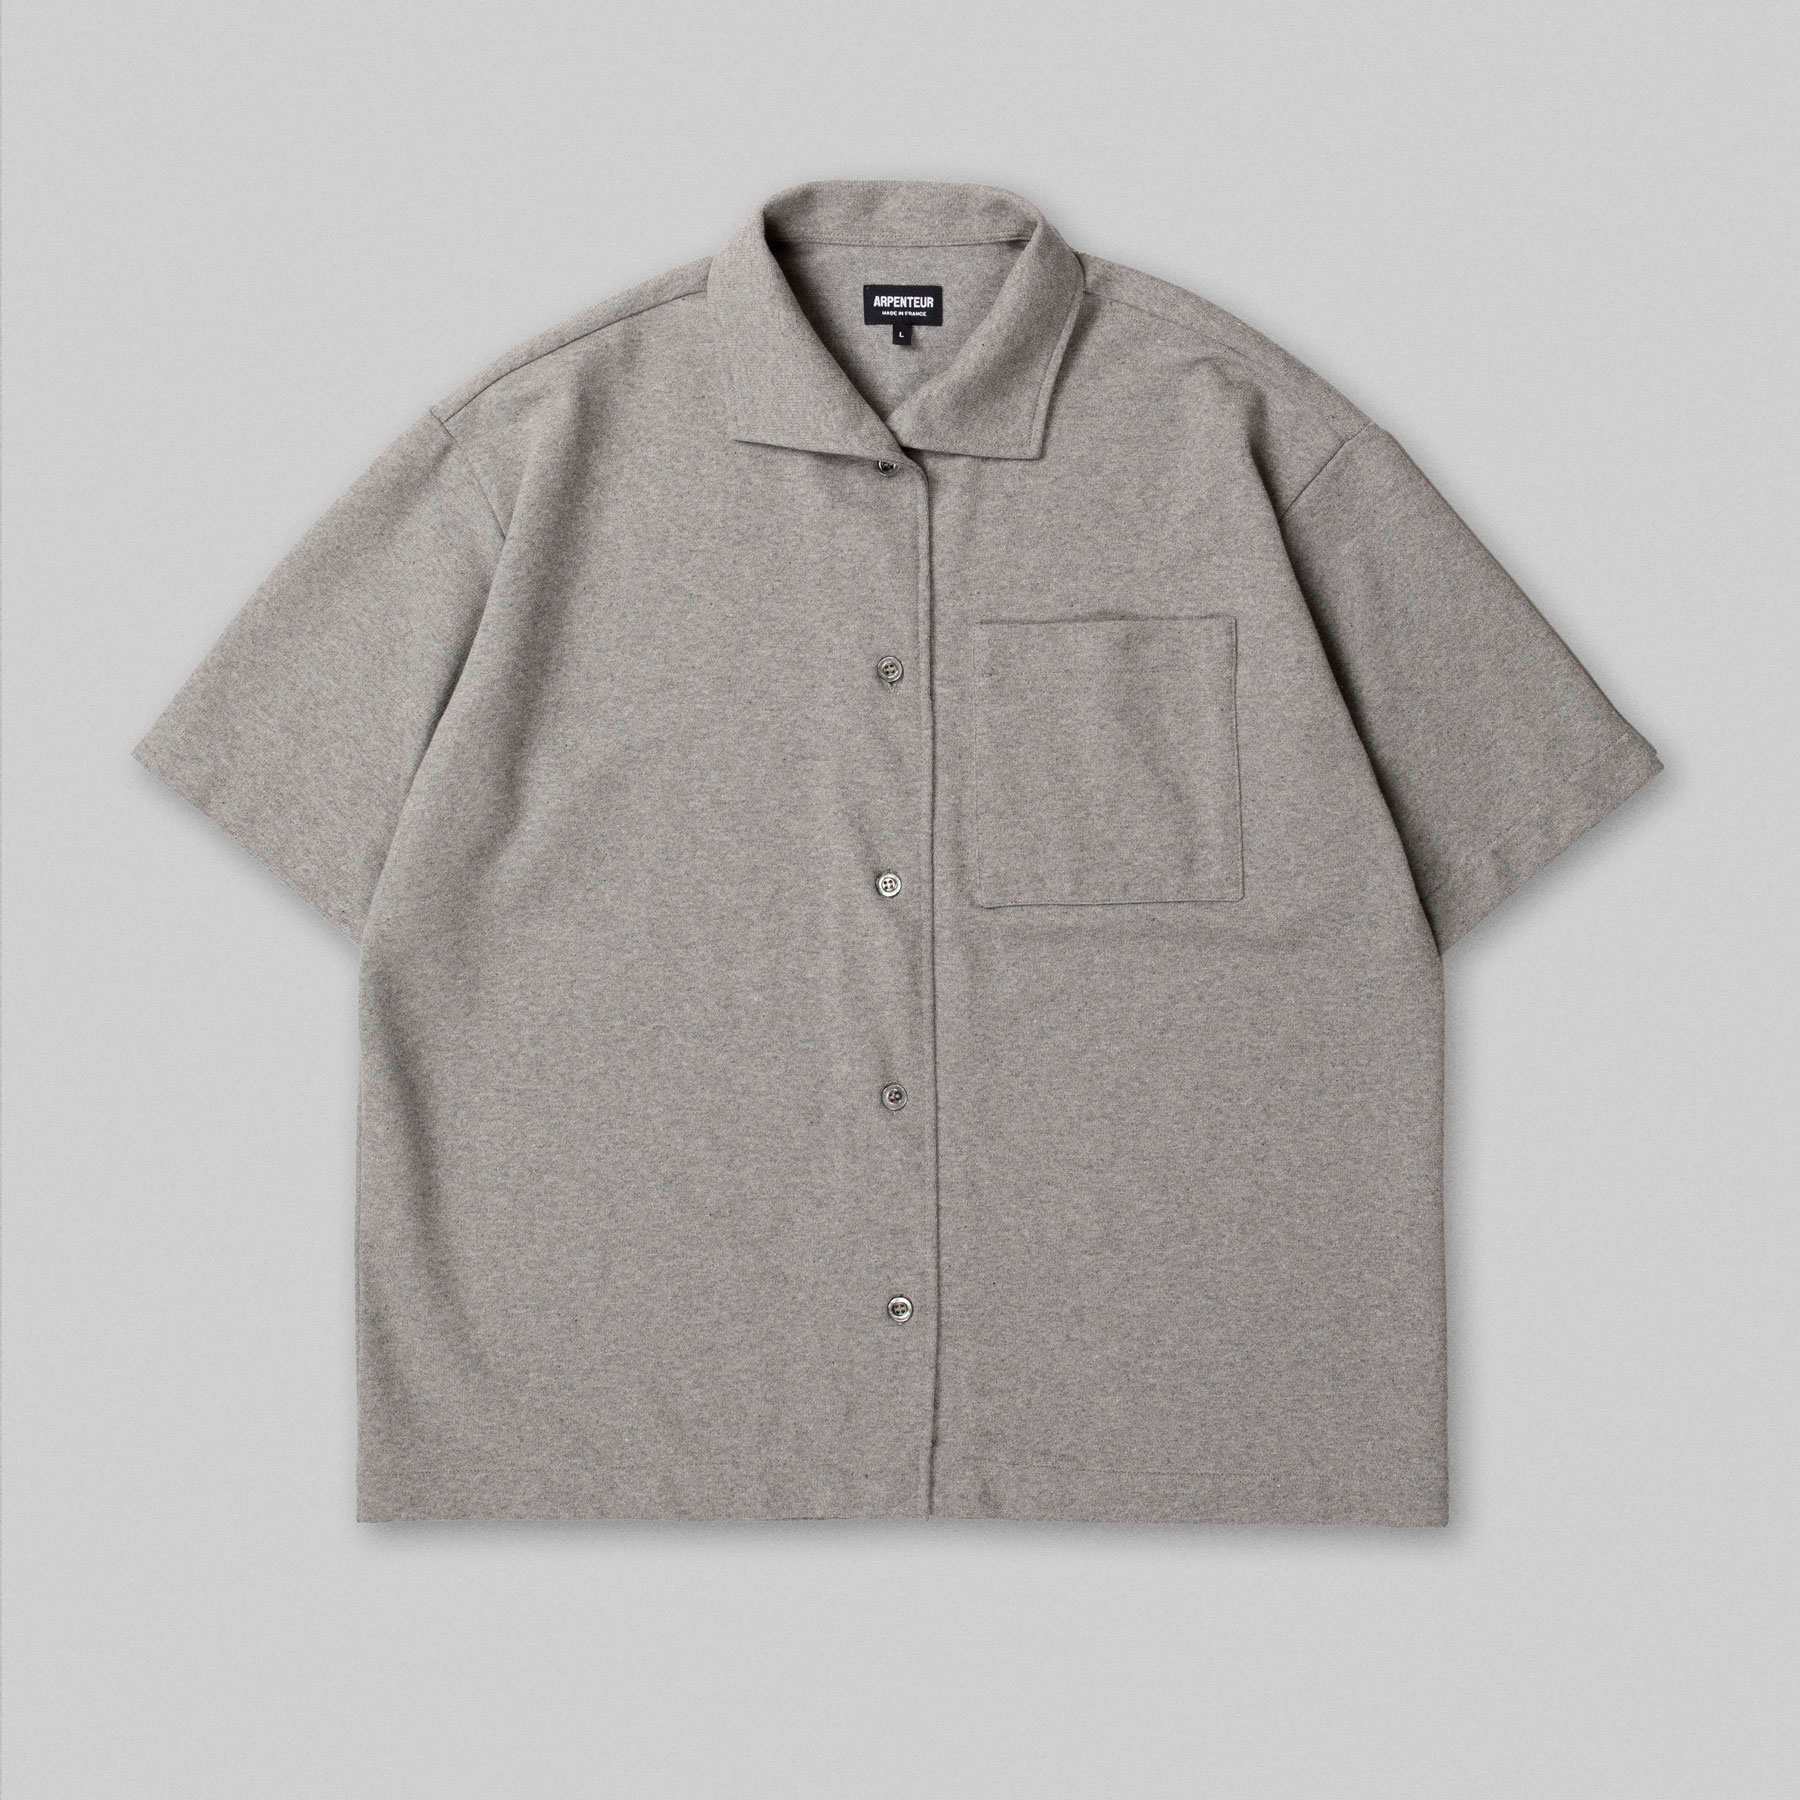 CORAL short sleeve shirt by Arpenteur in Melange grey color